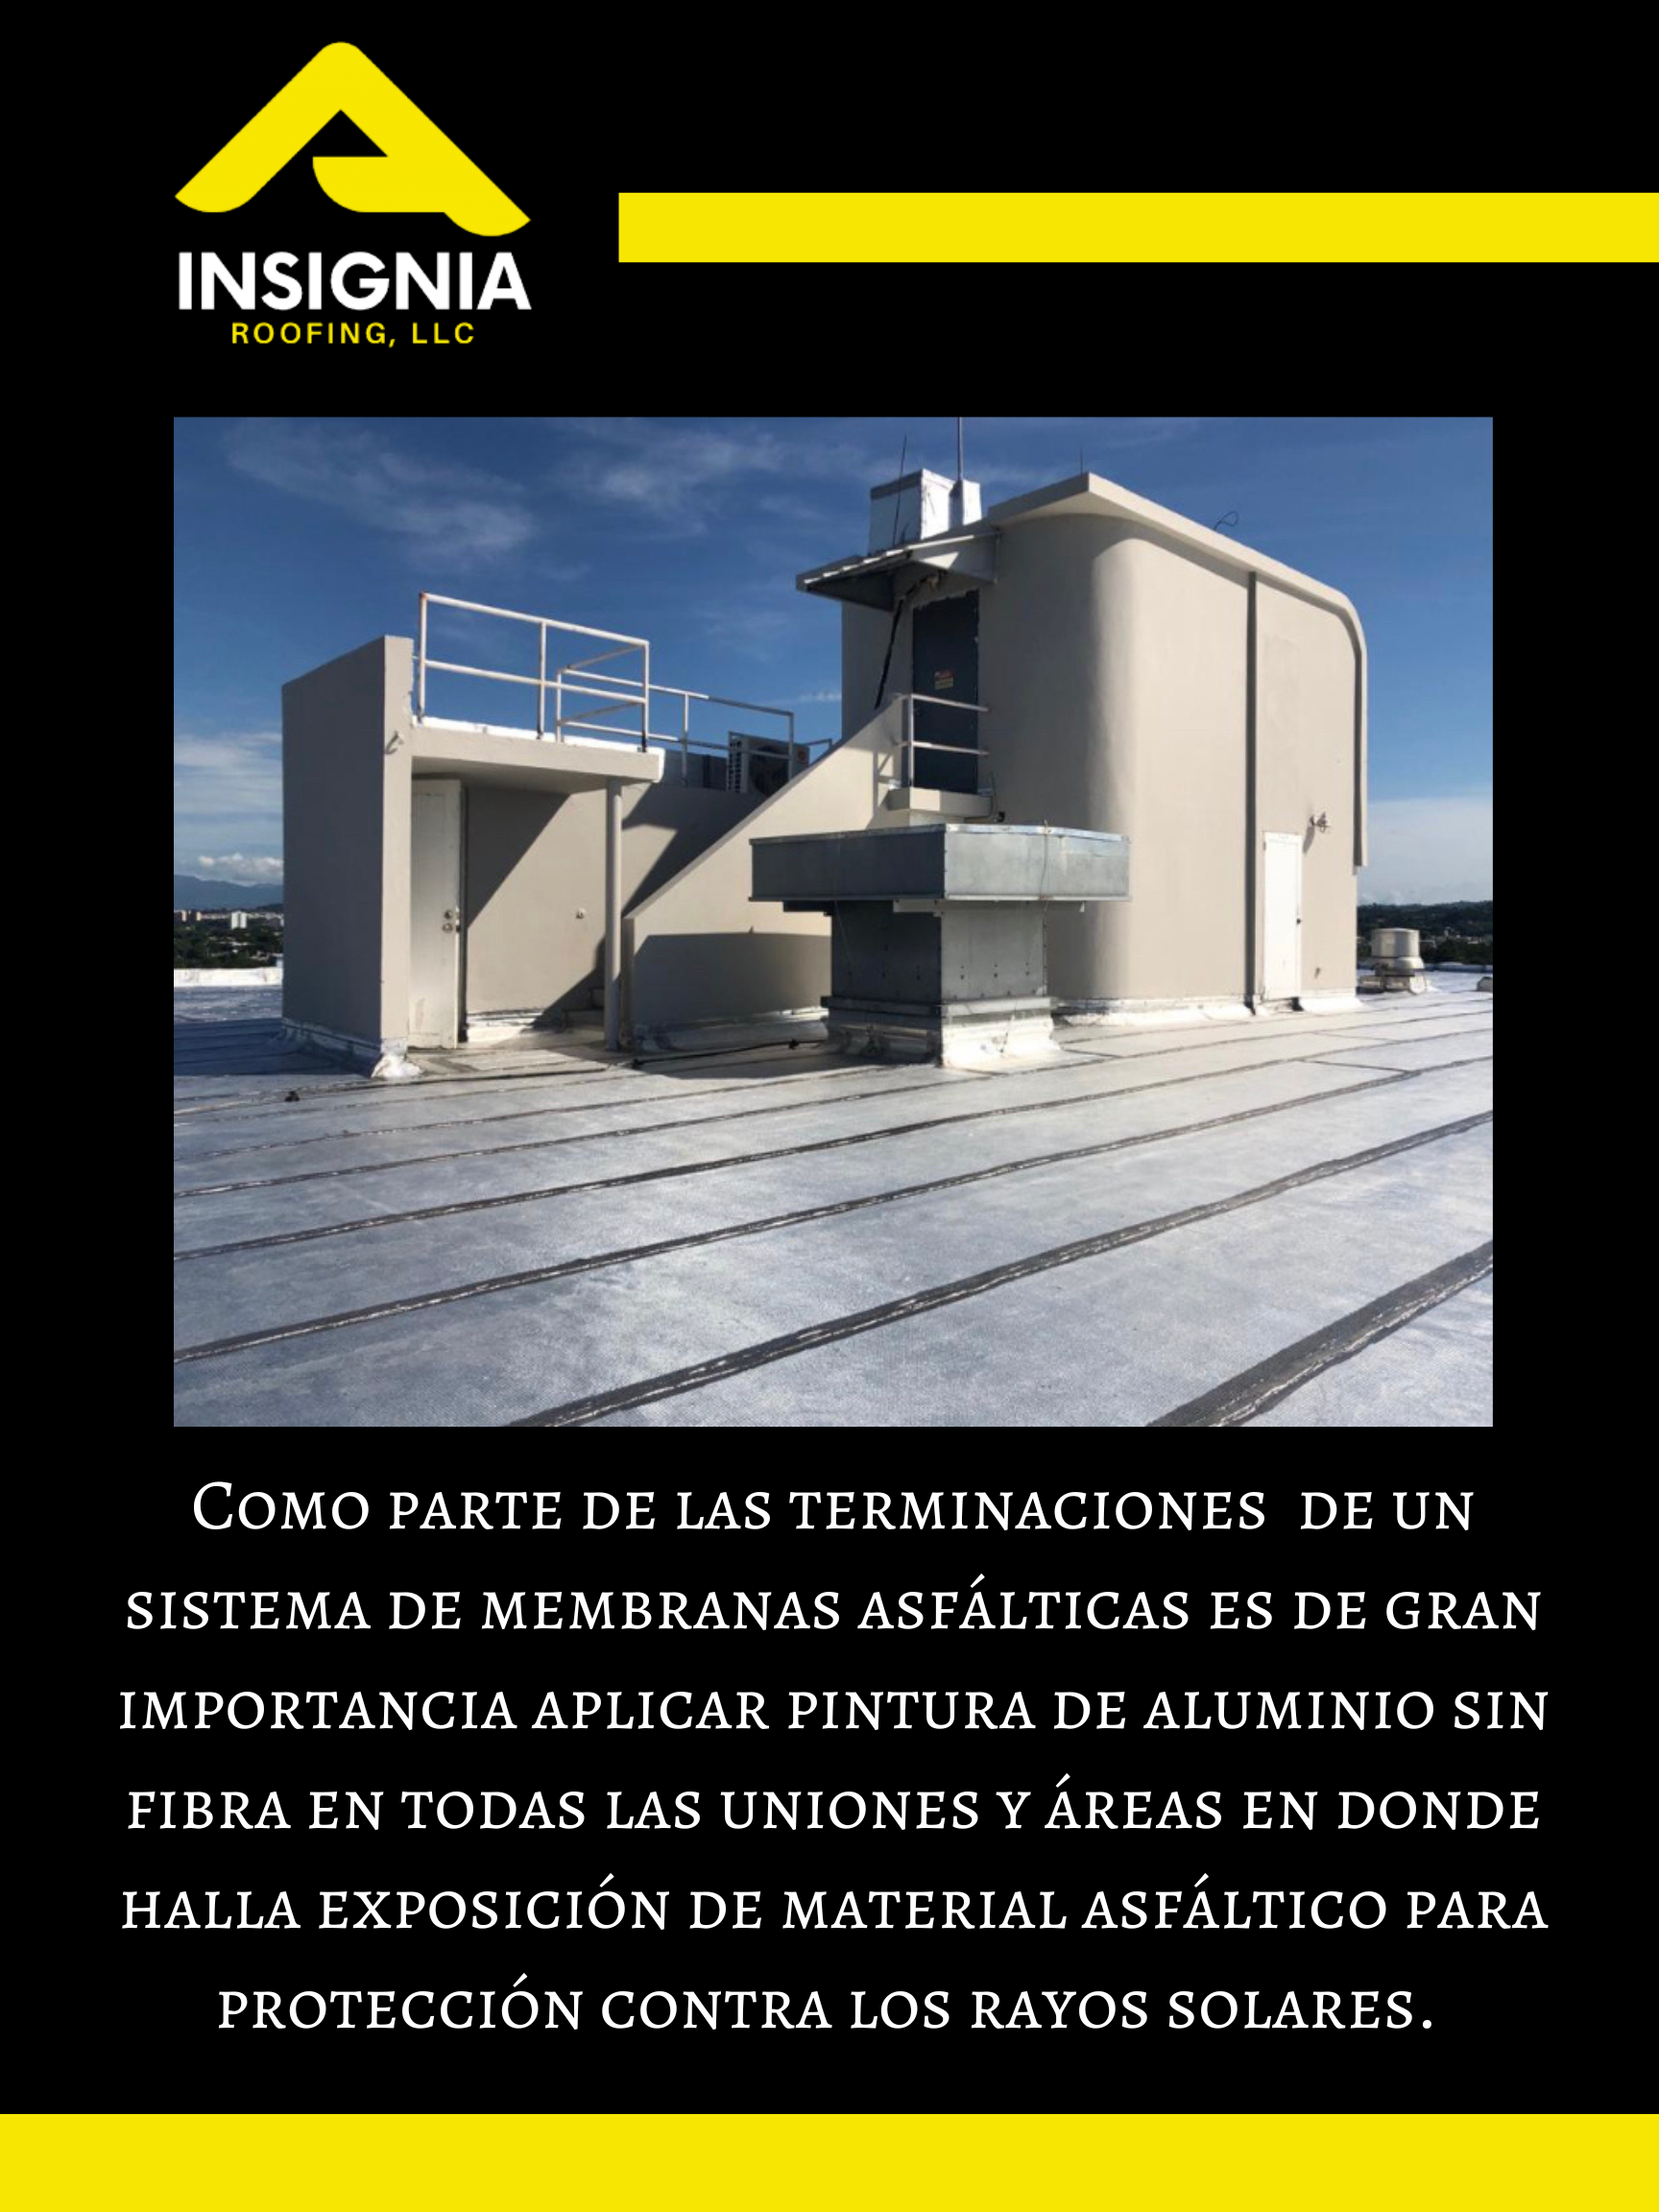 Insignia Roofing, LLC - Foto 7.0 (Inicio)